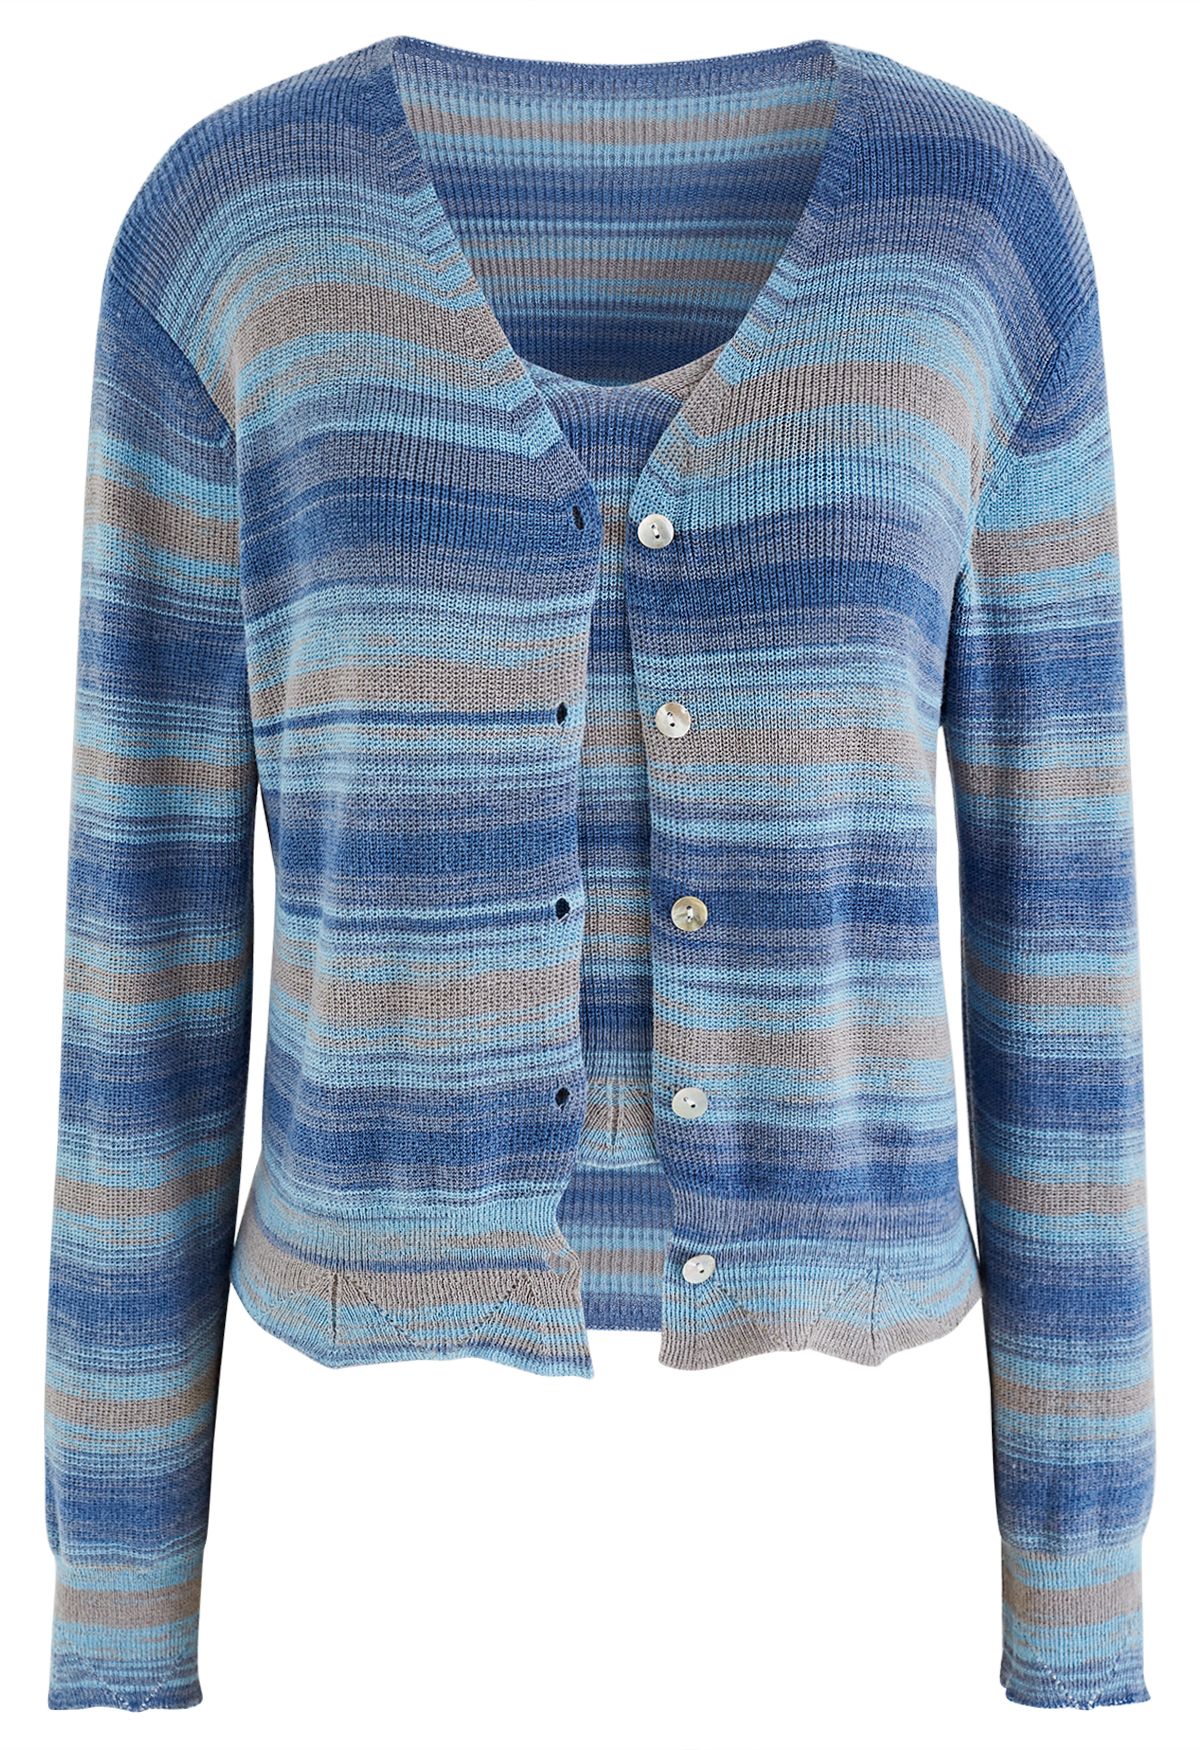 Mixcolor Striped Cami Crop Top et Cardigan Set en Bleu